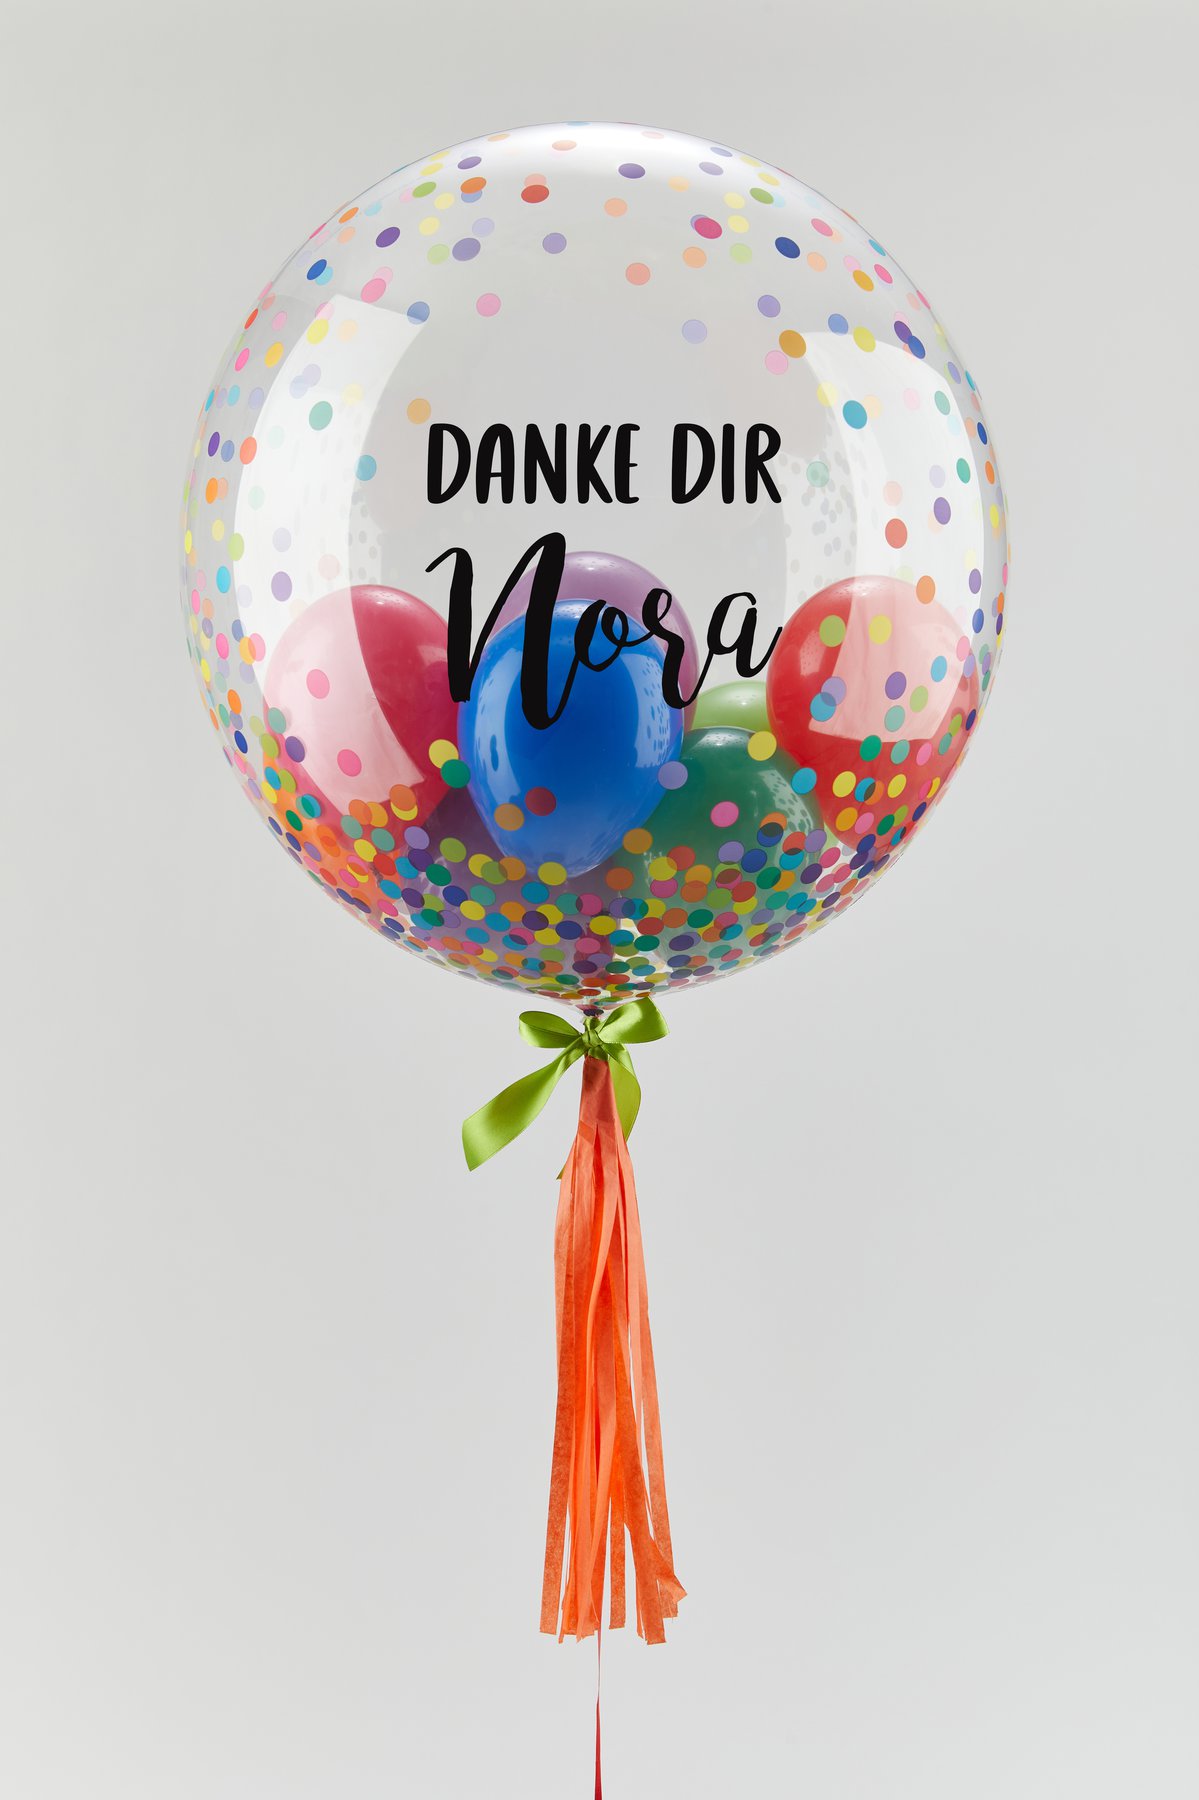 Happy Dankeschn